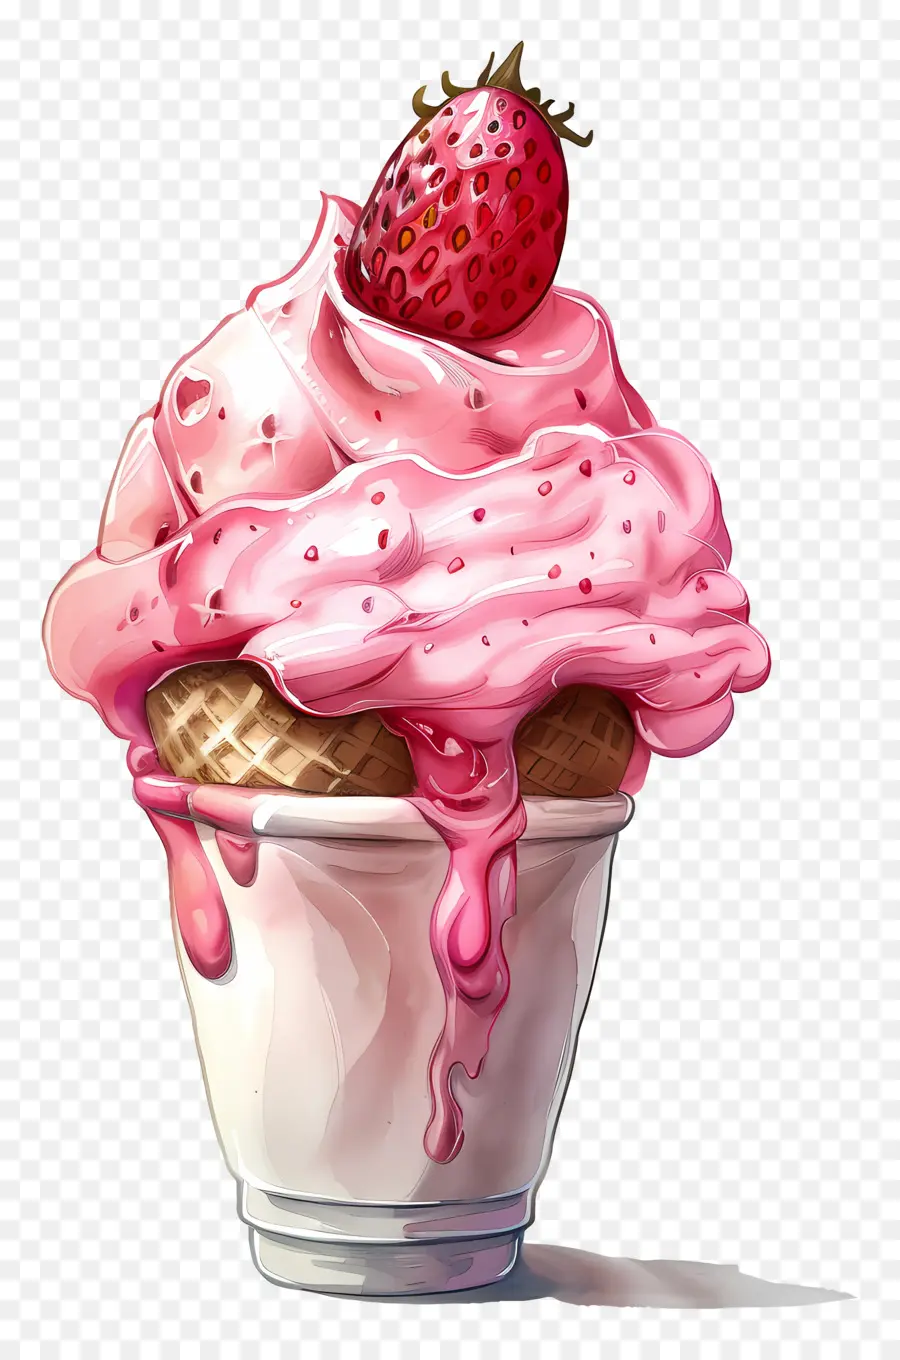 Eis Erdbeer -Erdbeer -Eis Sundae Kirschdessert - Erdbeereis -Sonnendänen in weißer Tasse